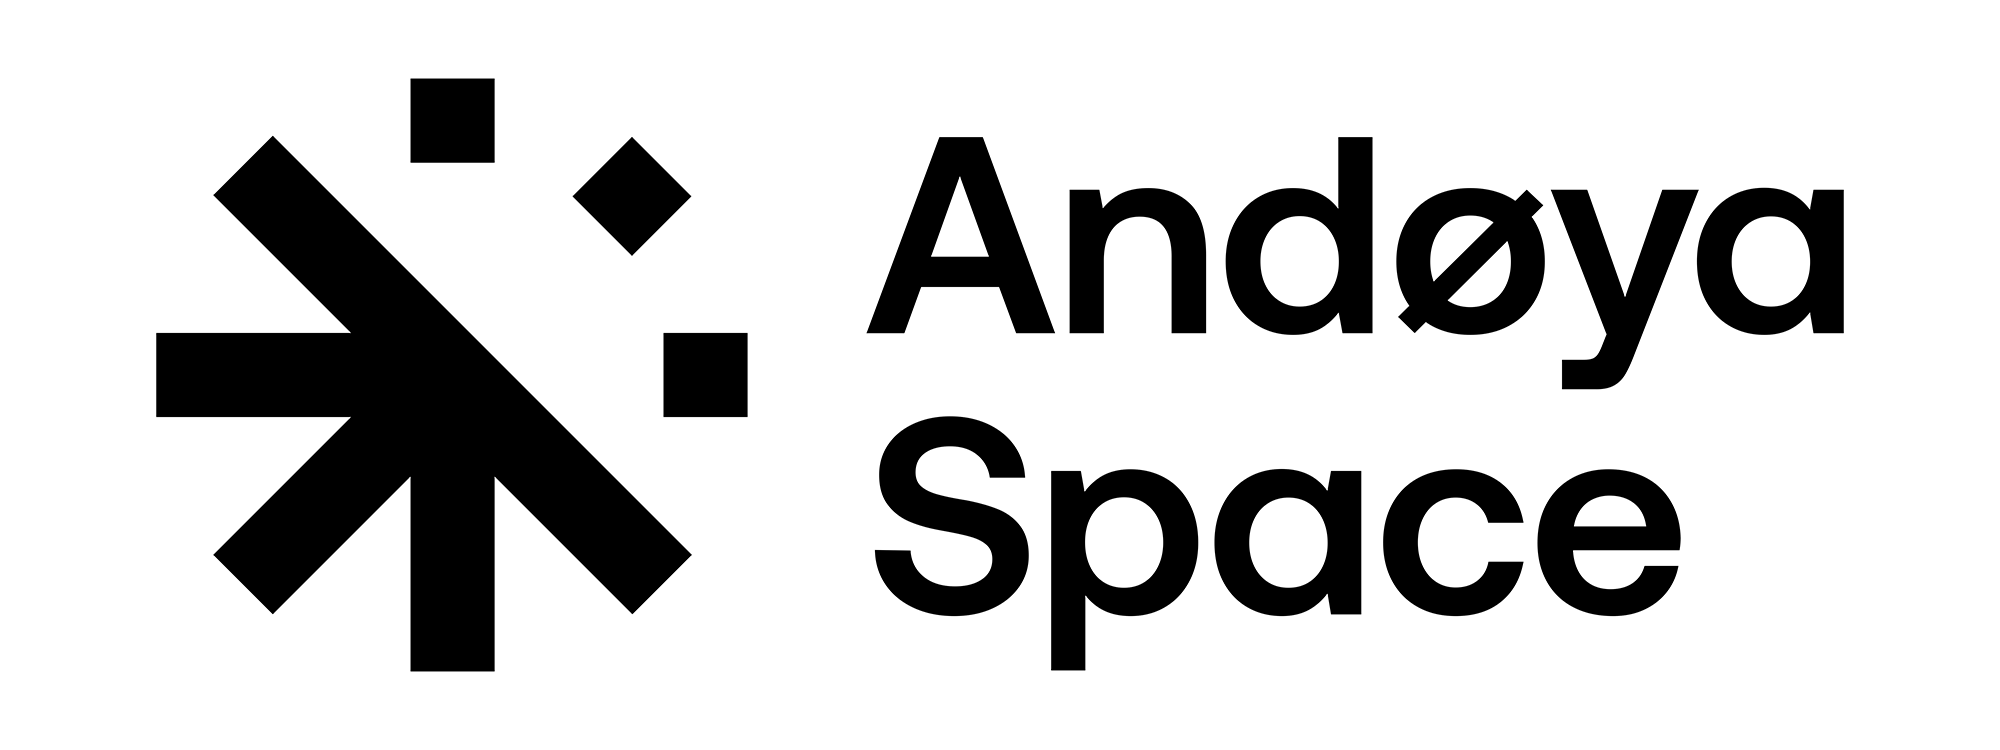 Andoya-Space-Logo-2k-musta-transparent2